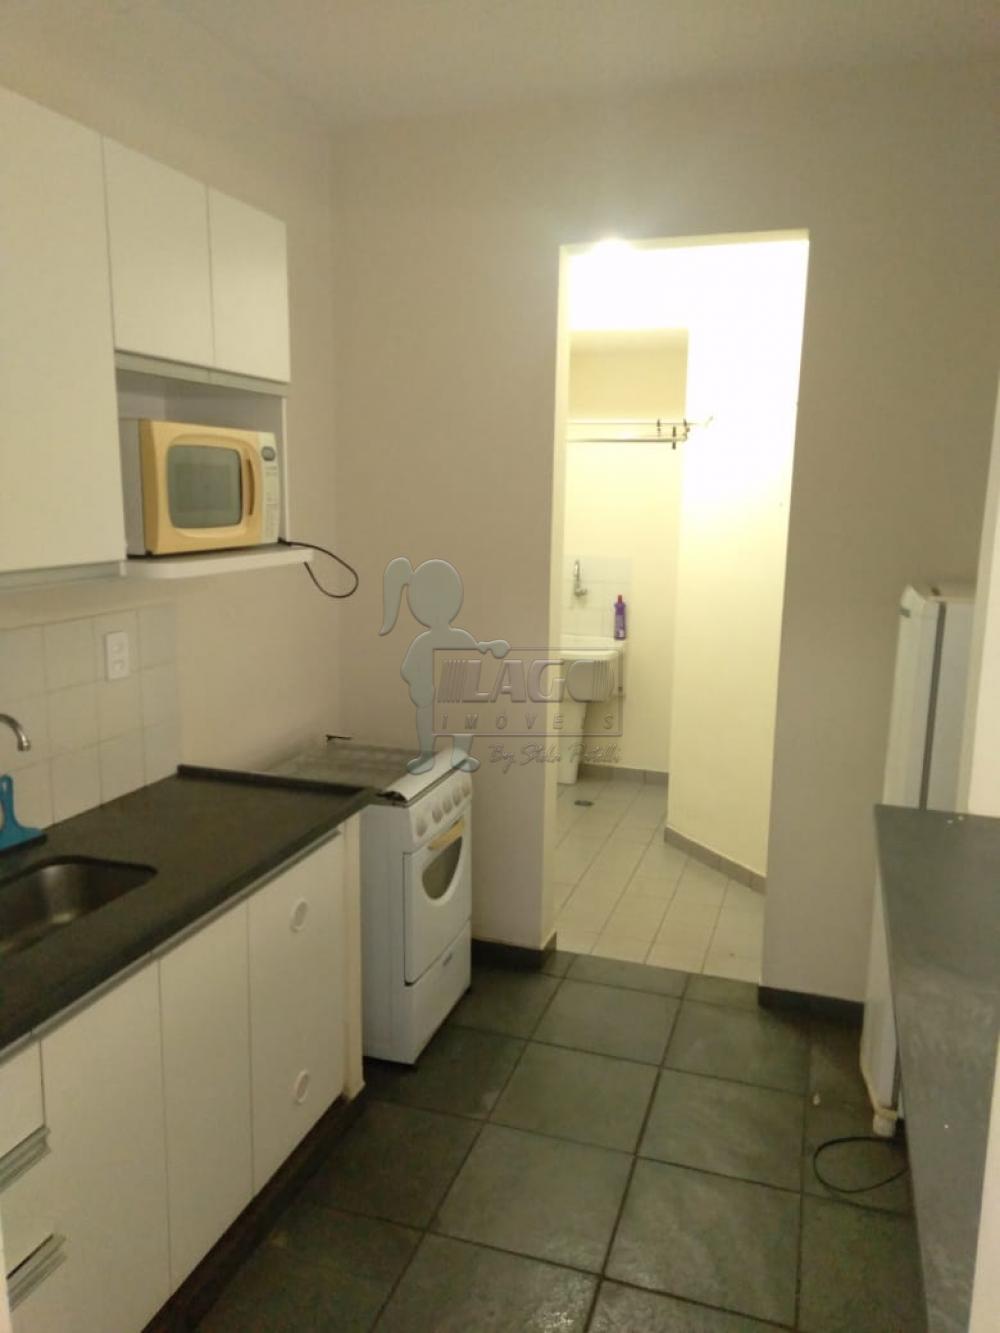 Alugar Apartamentos / Kitchenet / Flat em Ribeirão Preto R$ 600,00 - Foto 3